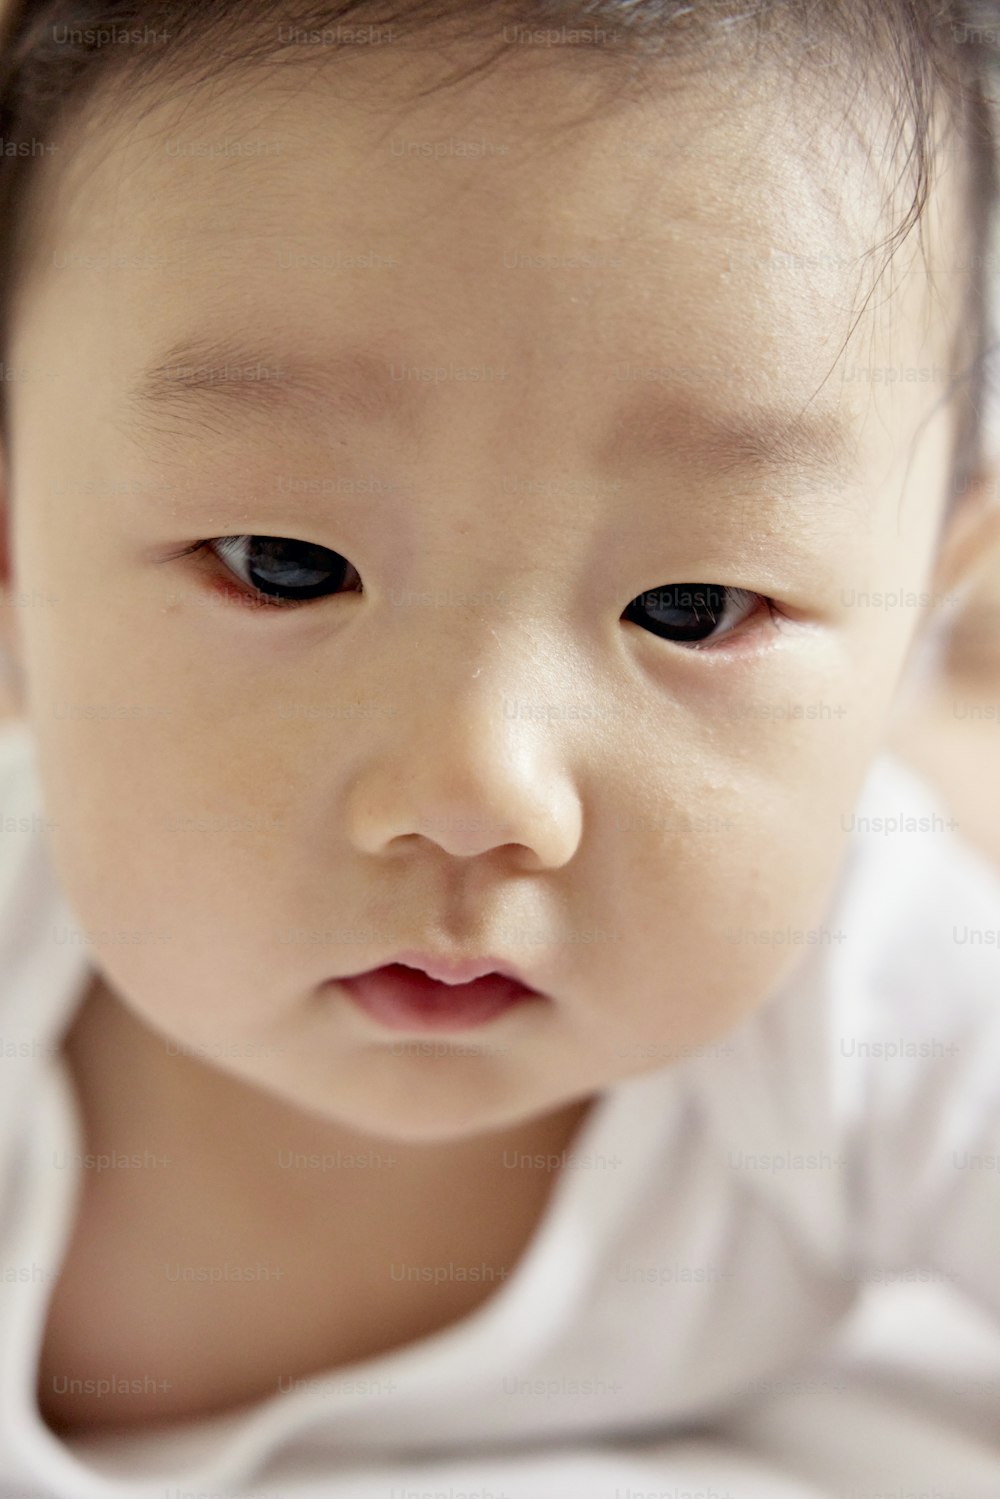 Un primer plano de un bebé con una camisa blanca